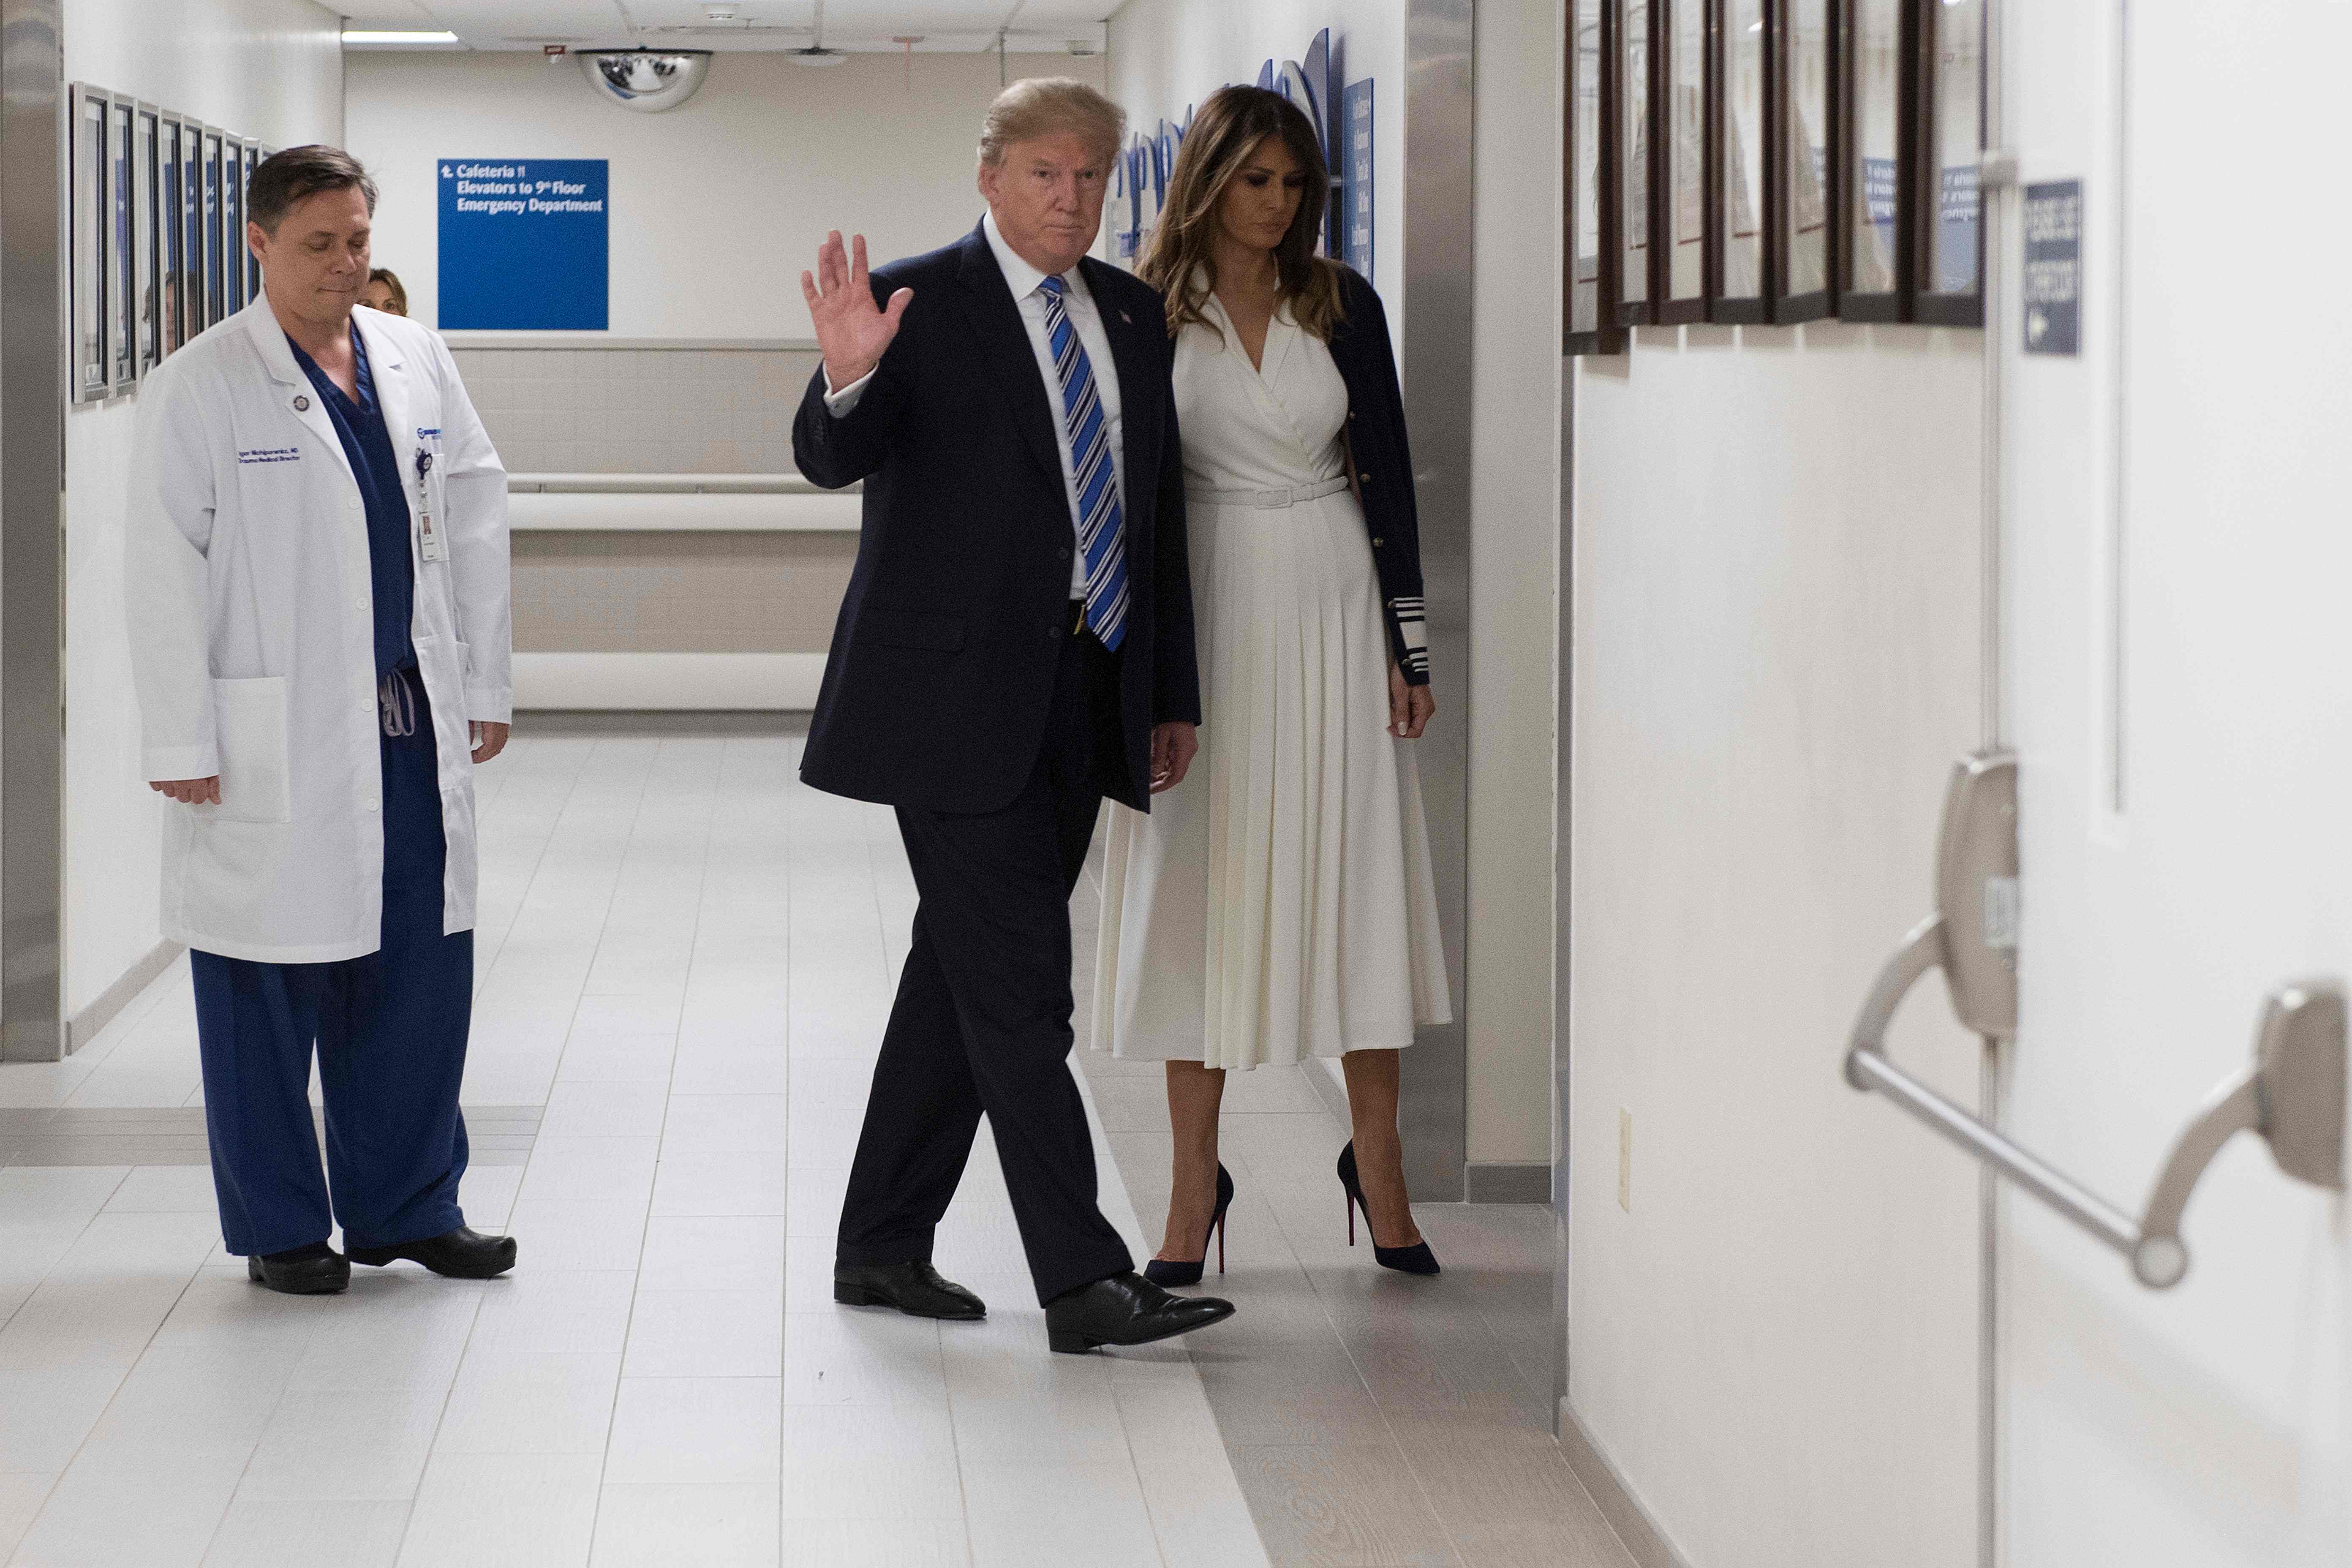 ترامب وزوجته داخل مستشفى بومبانو بيتش بولاية فلوريدا